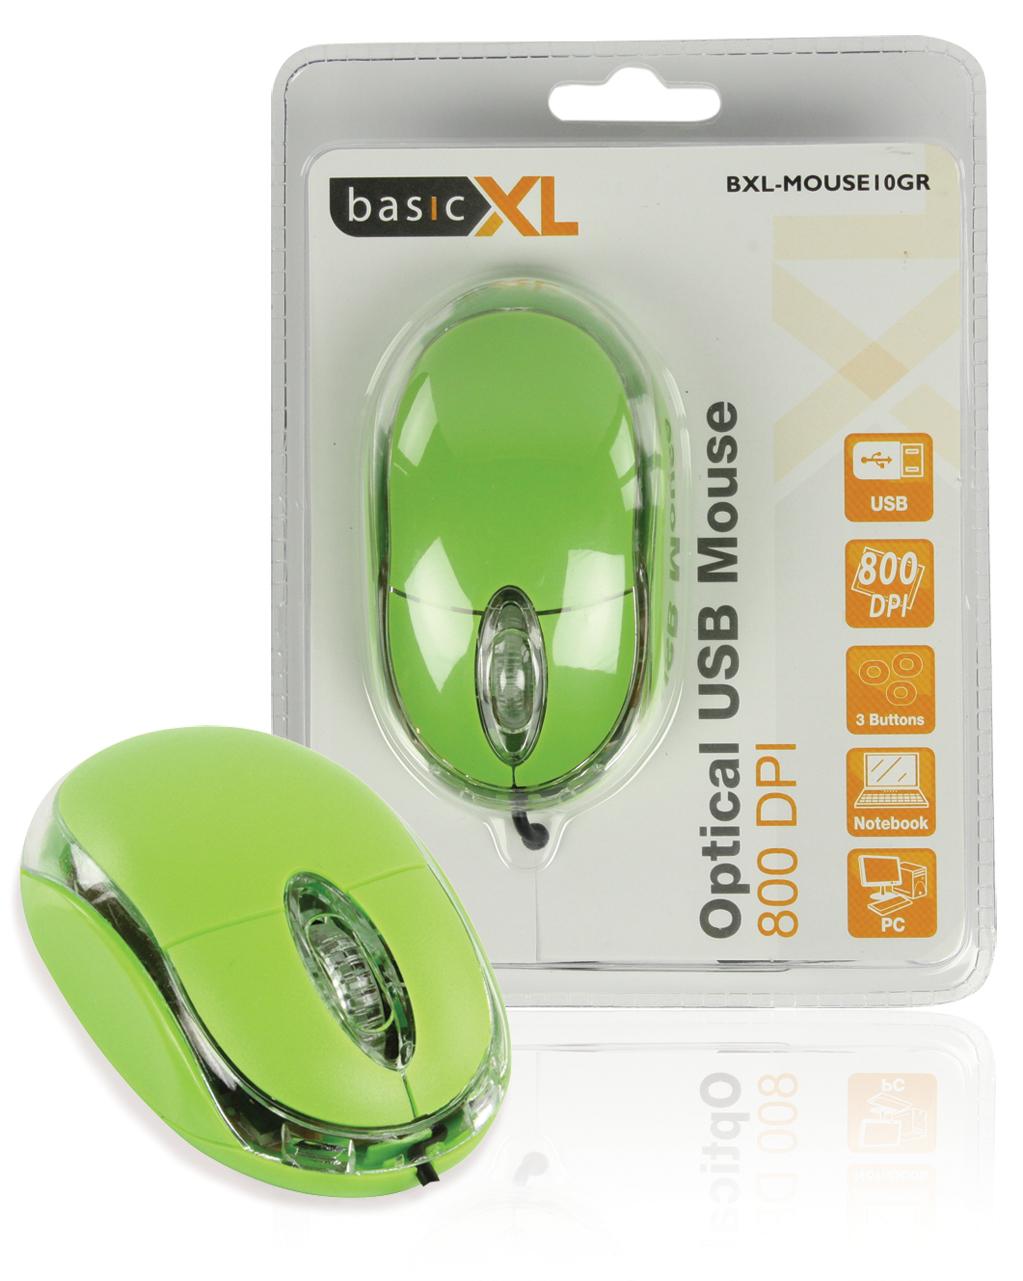 Foto basicXL Ratón óptico USB color verde foto 563028